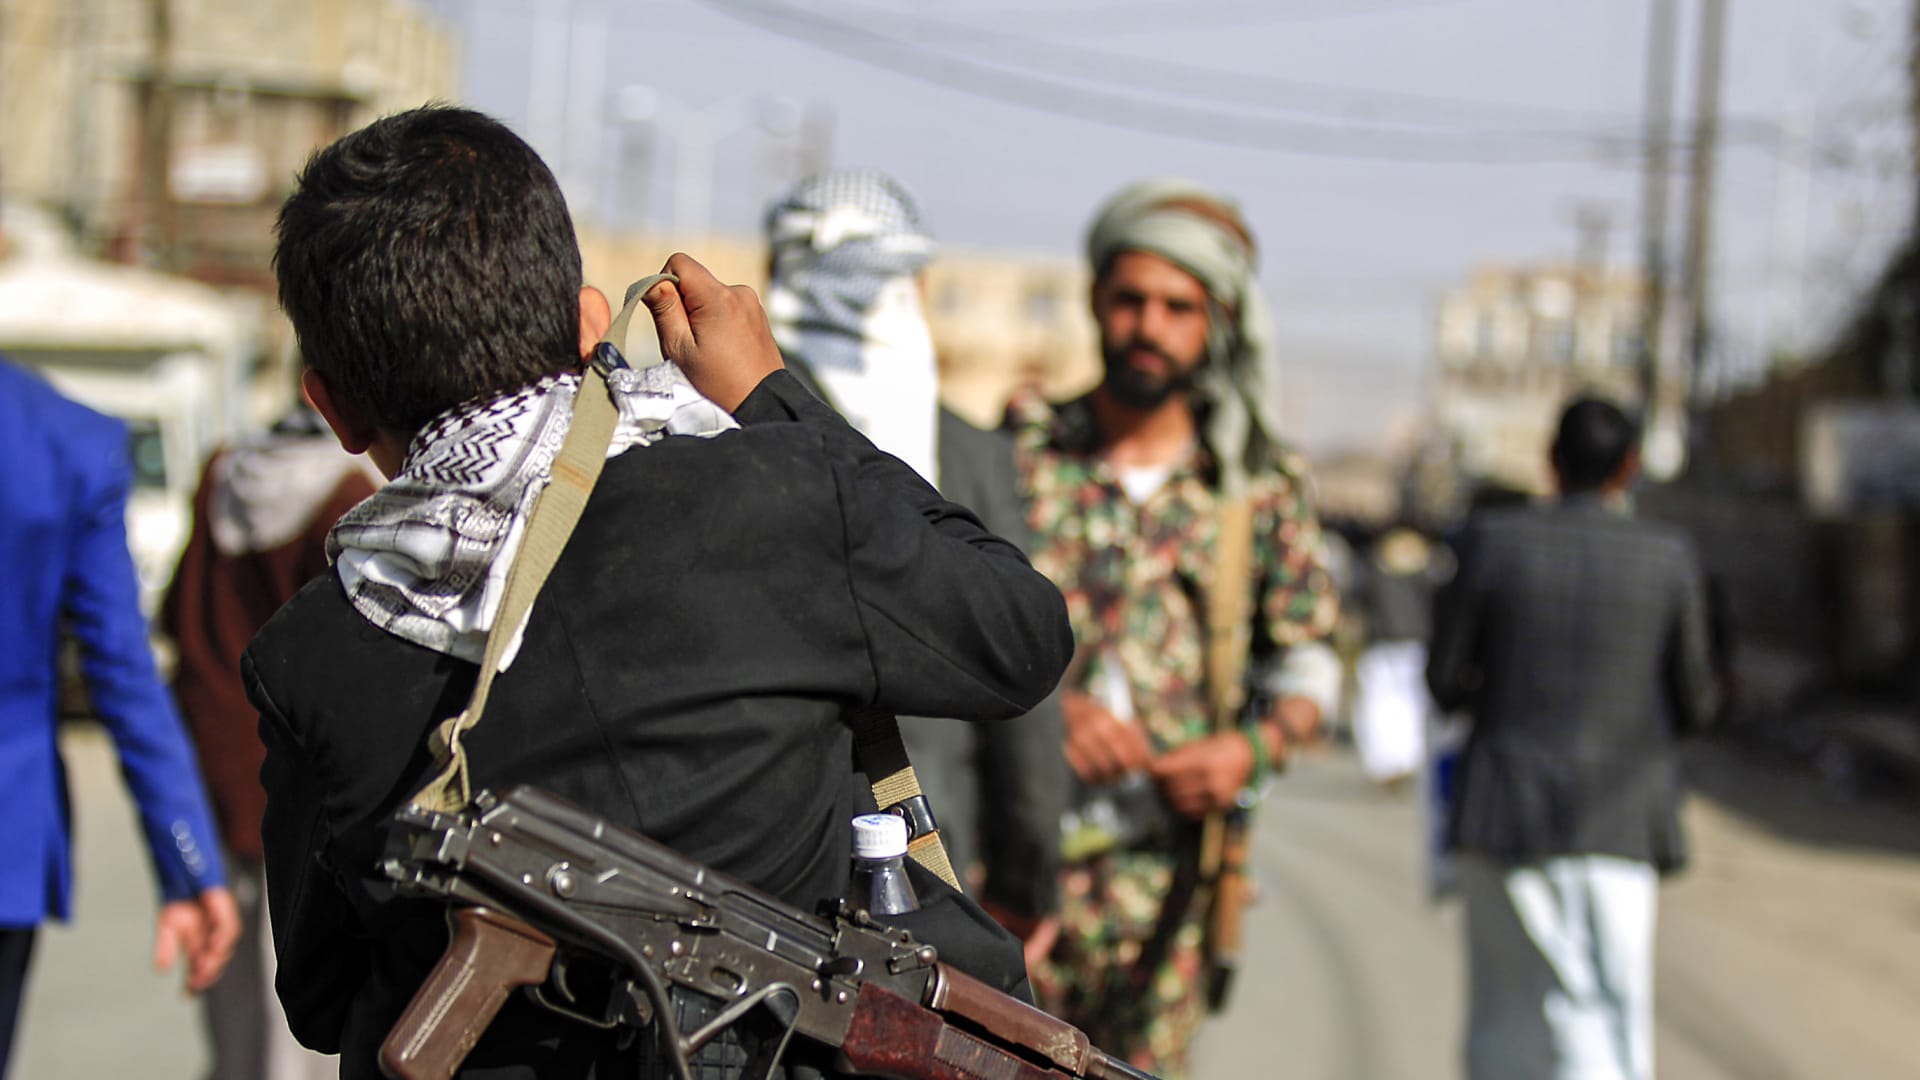 التحالف السعودي يكشف عن عملية تدمير منظومة اتصالات للحوثيين: يستخدمون الوزارة بعمليات عدائية